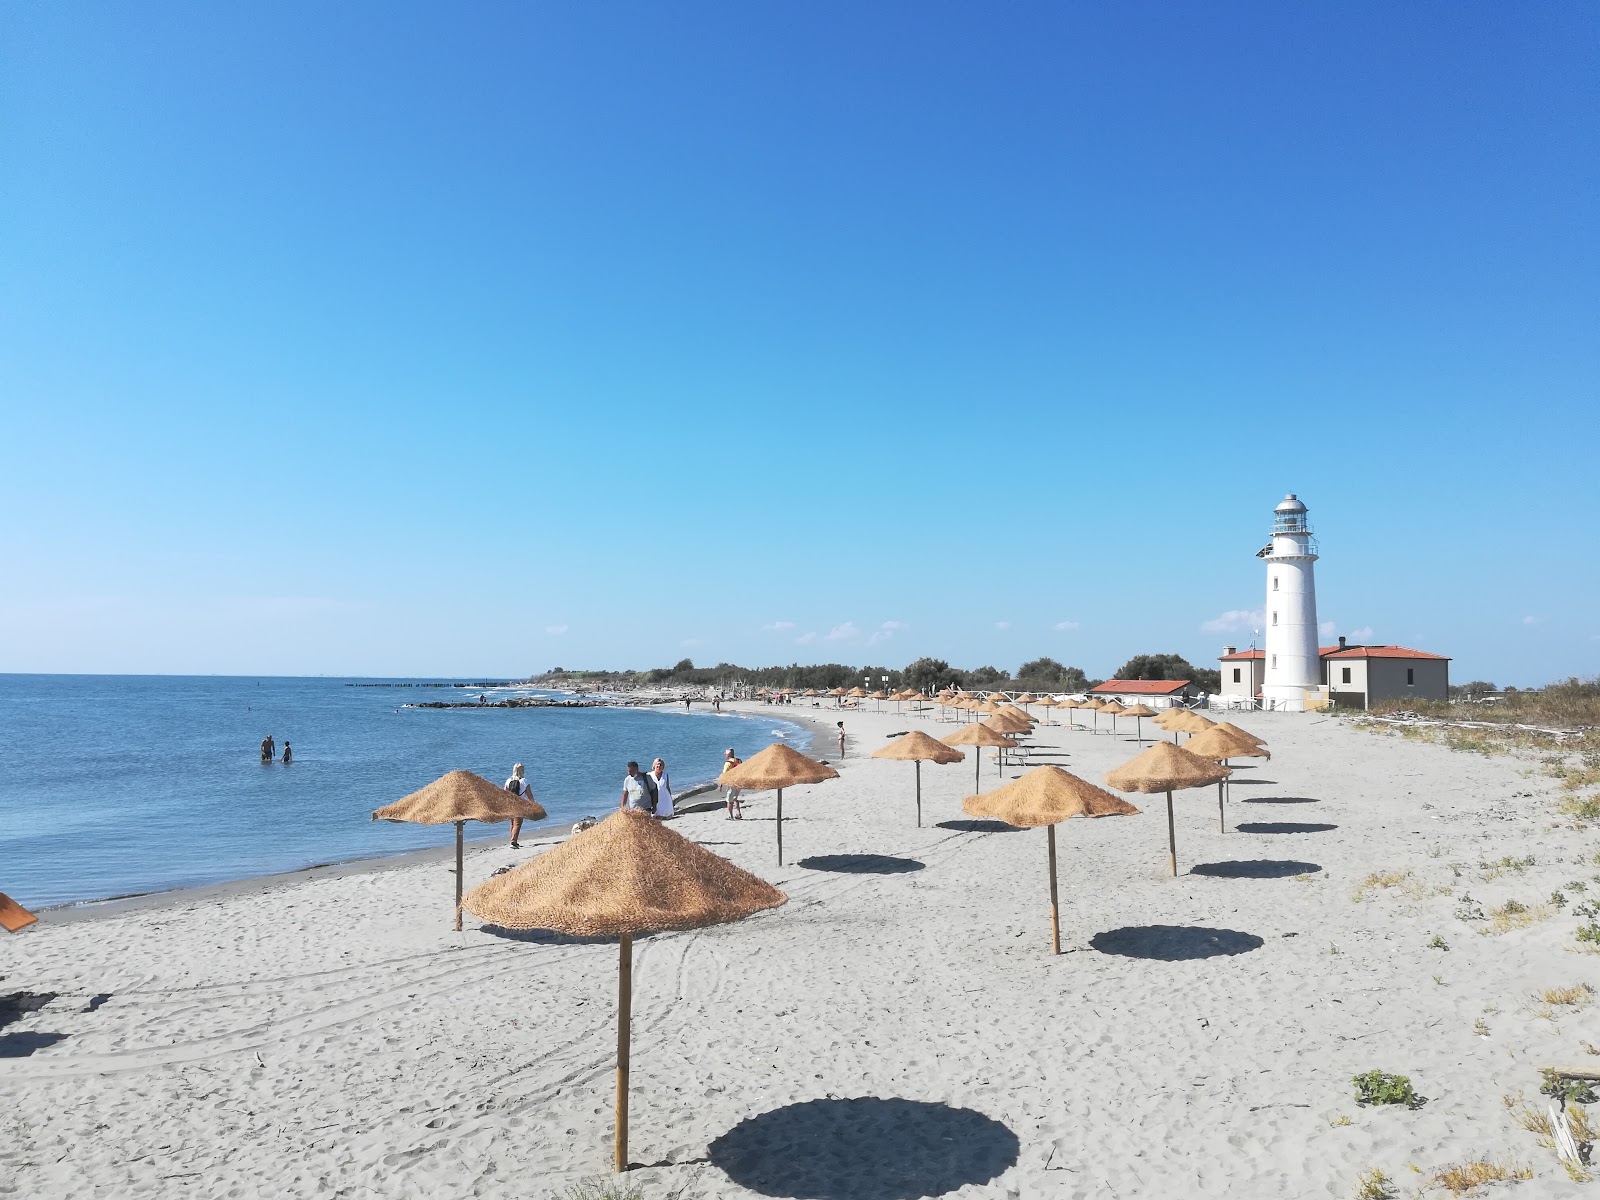 Foto av Spiaggia dell'Isola dell'Amore med ljus sand yta